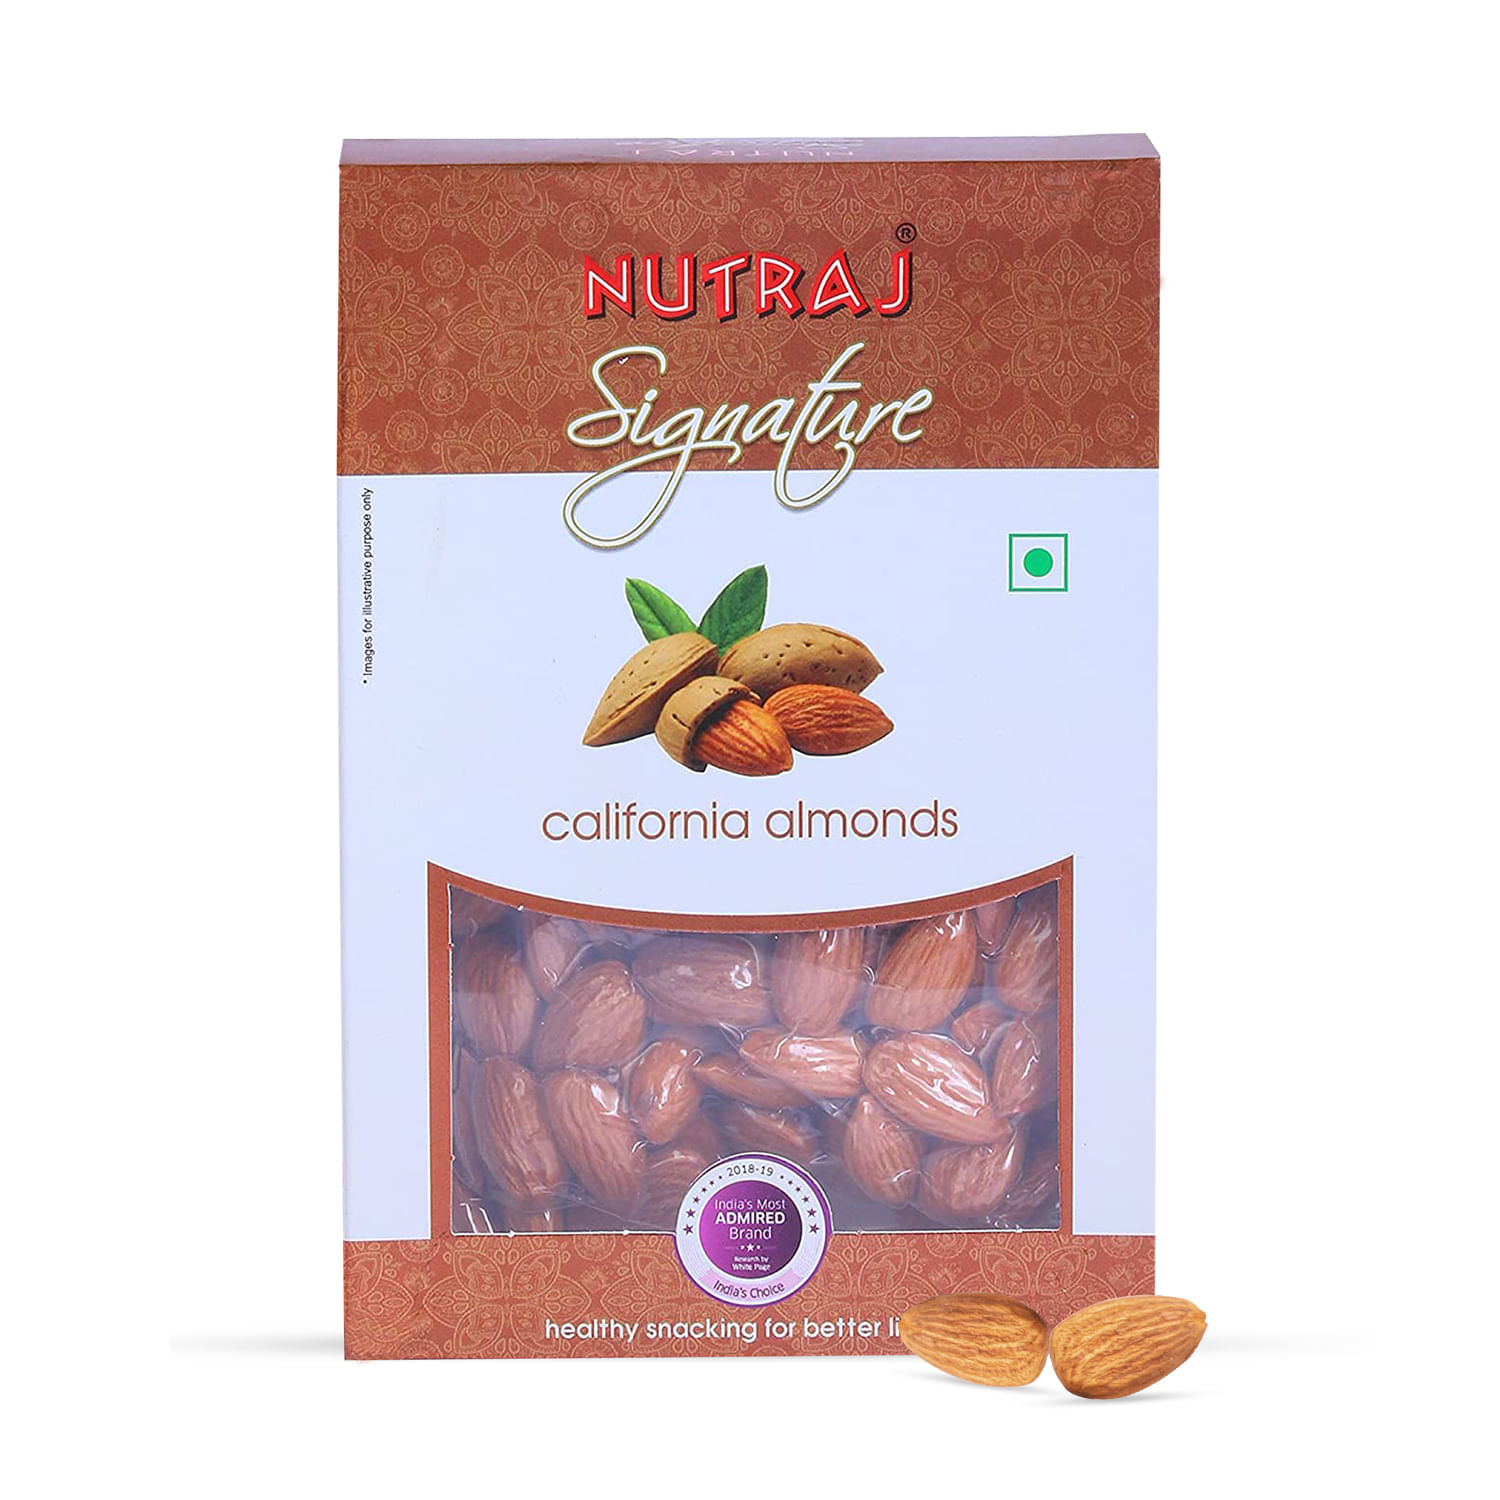 Nutraj Signature California Almonds Plain 400g (2 X 200g) - Vacuum Pack